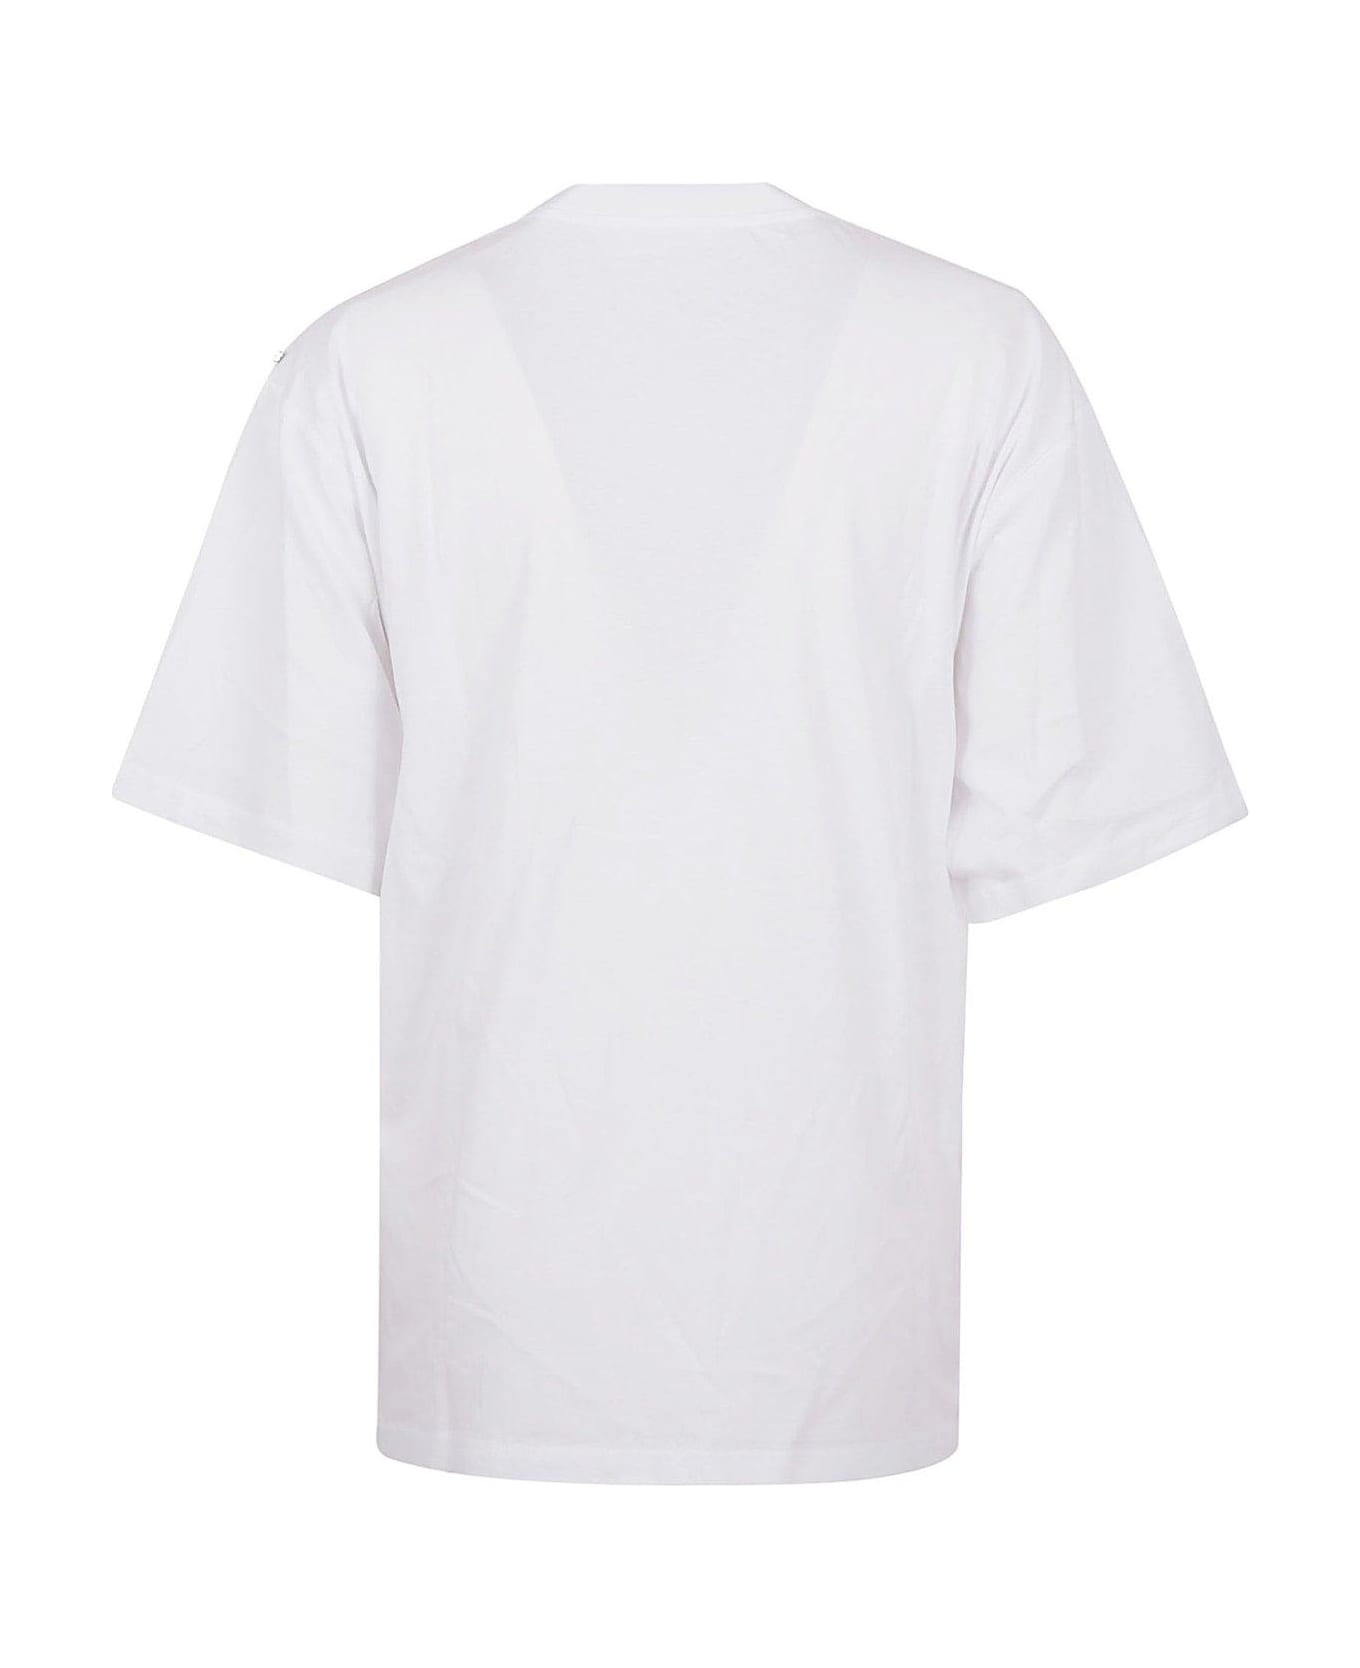 SportMax Cerwneck Short-sleeved T-shirt - POPTICAL WHITE Tシャツ